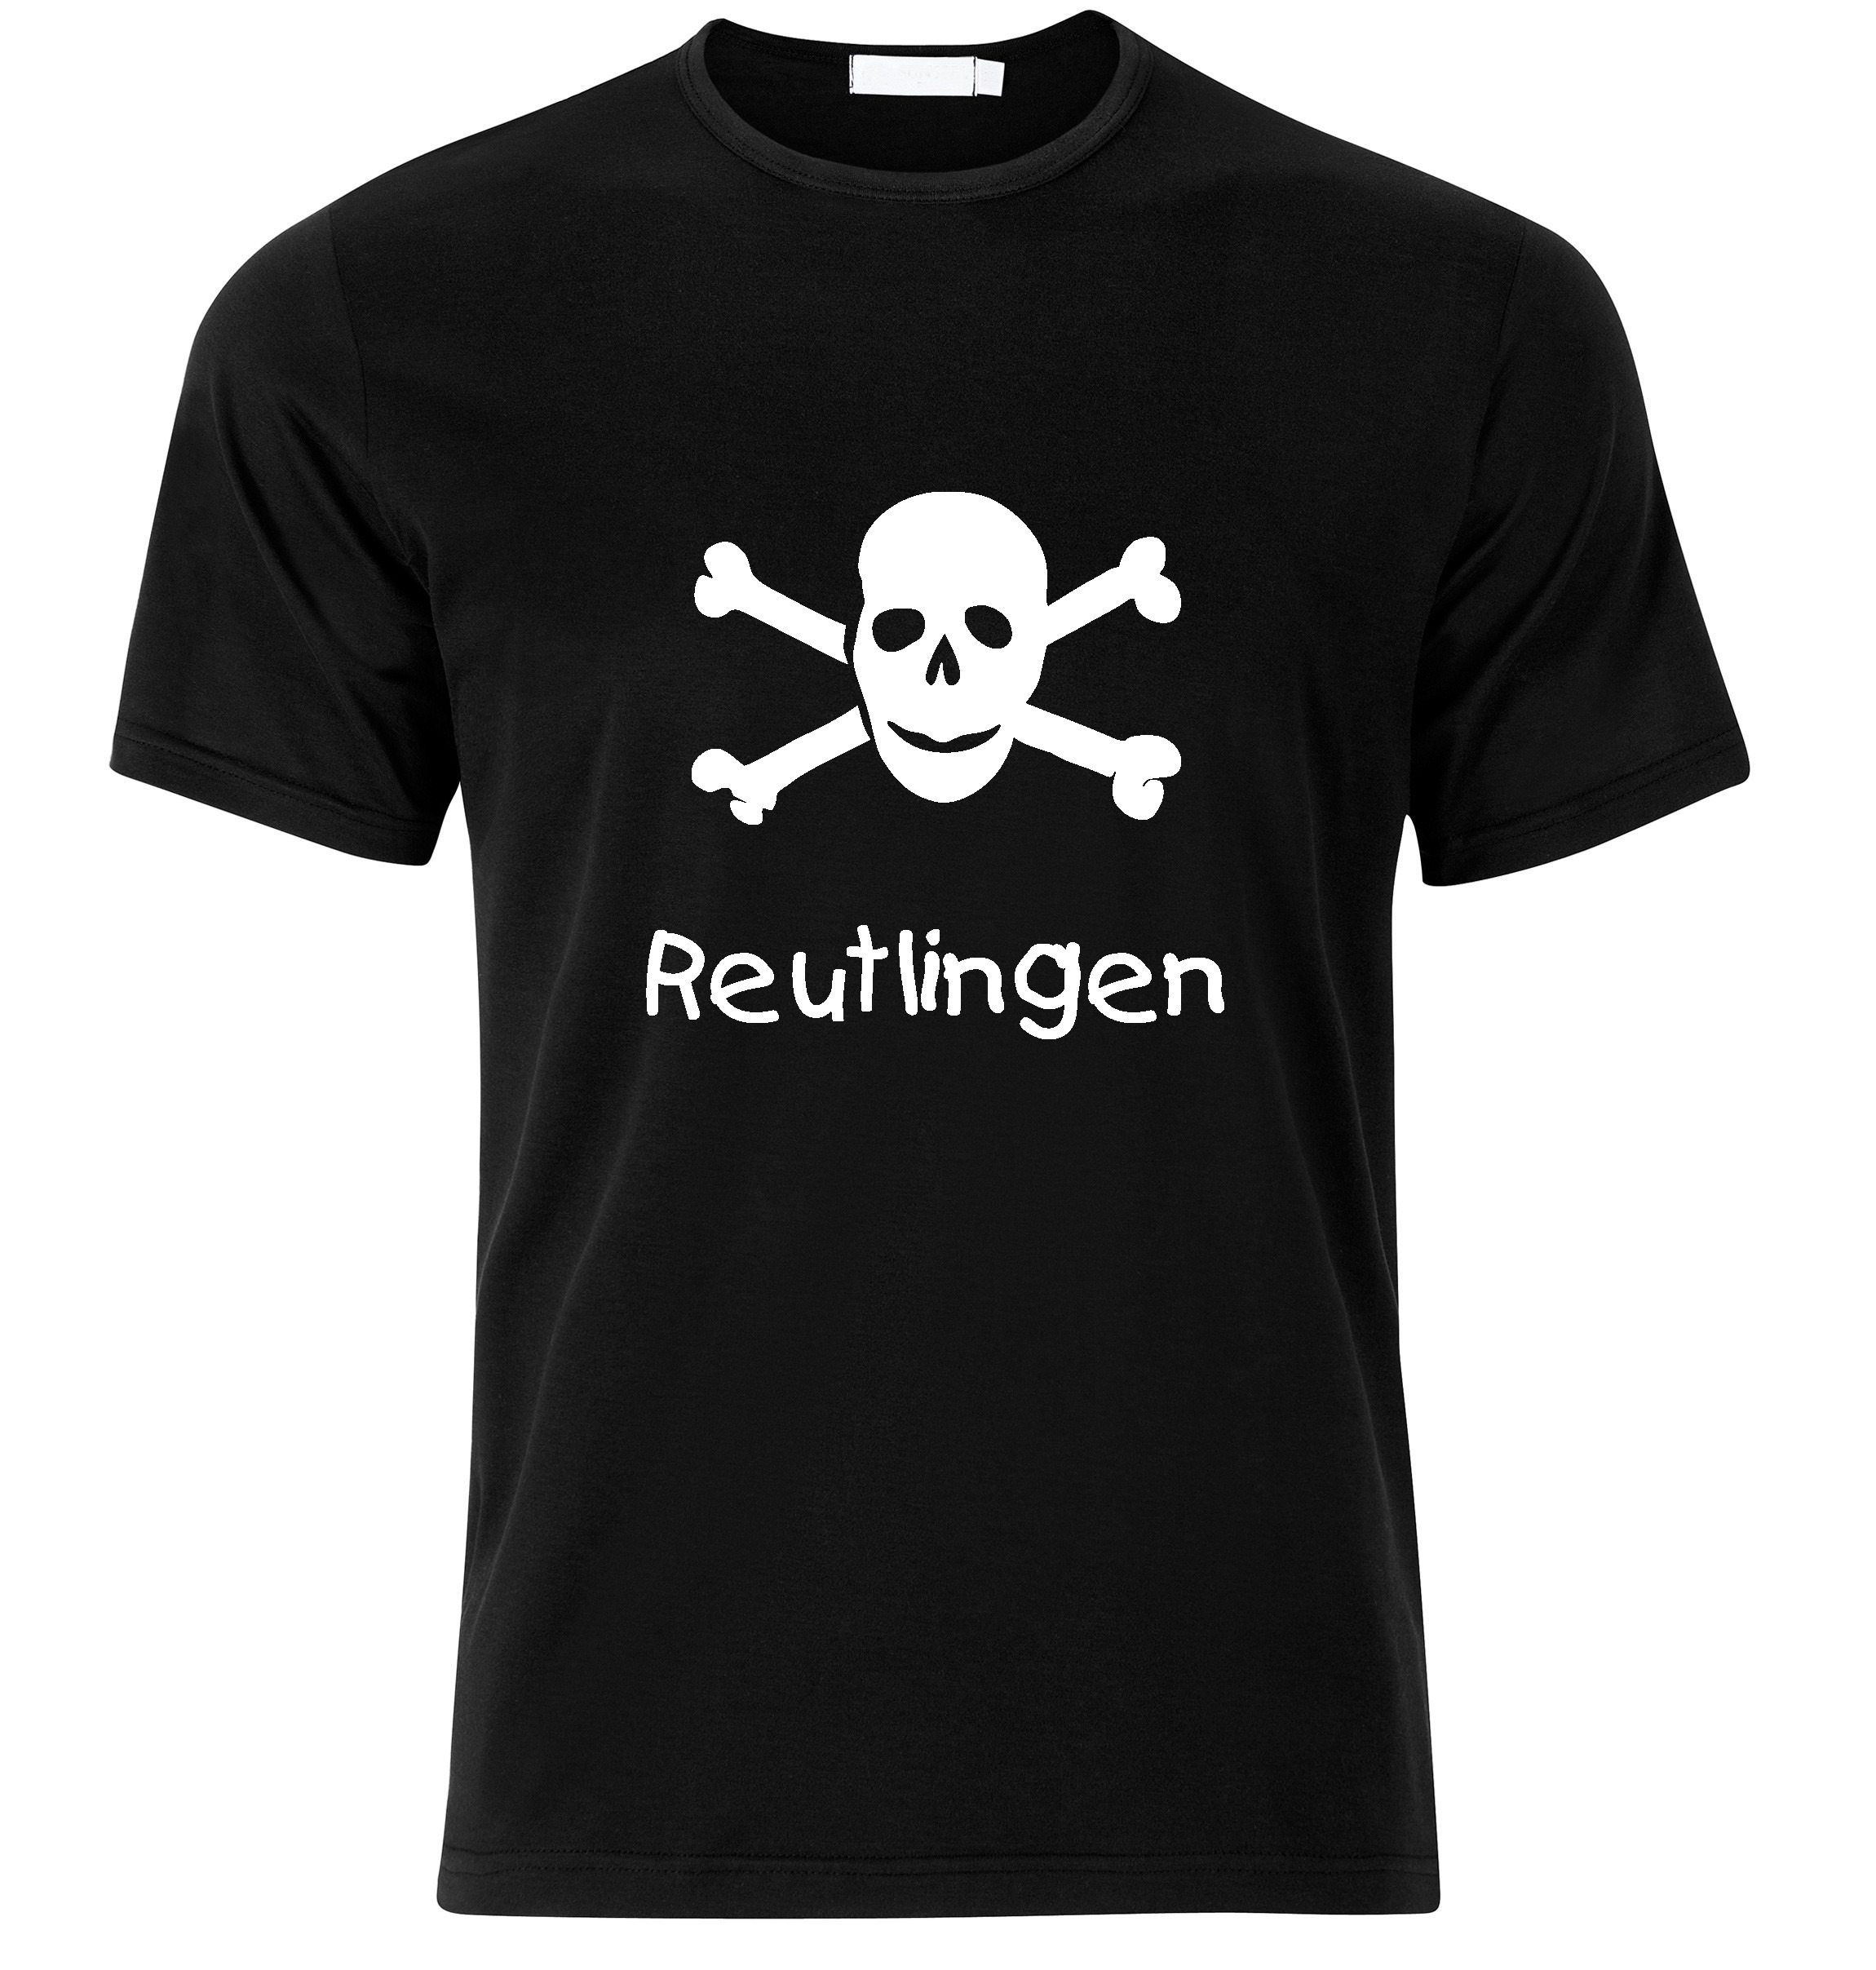 T-Shirt Reutlingen Jolly Roger, Totenkopf